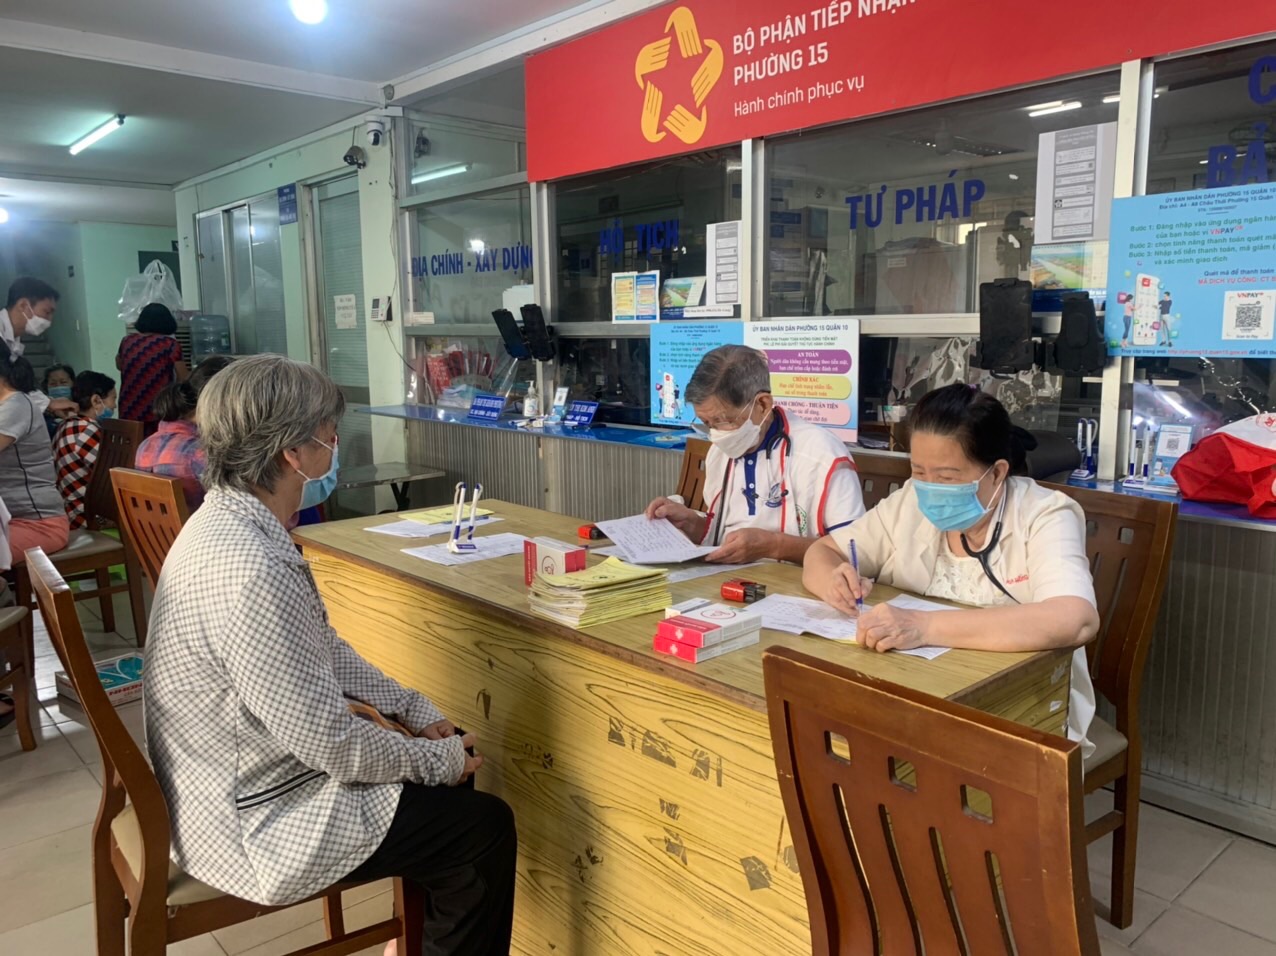 Bảo Huyết Khang chung tay cùng y bác sĩ thăm khám và cấp thuốc miễn phí cho người cao tuổi